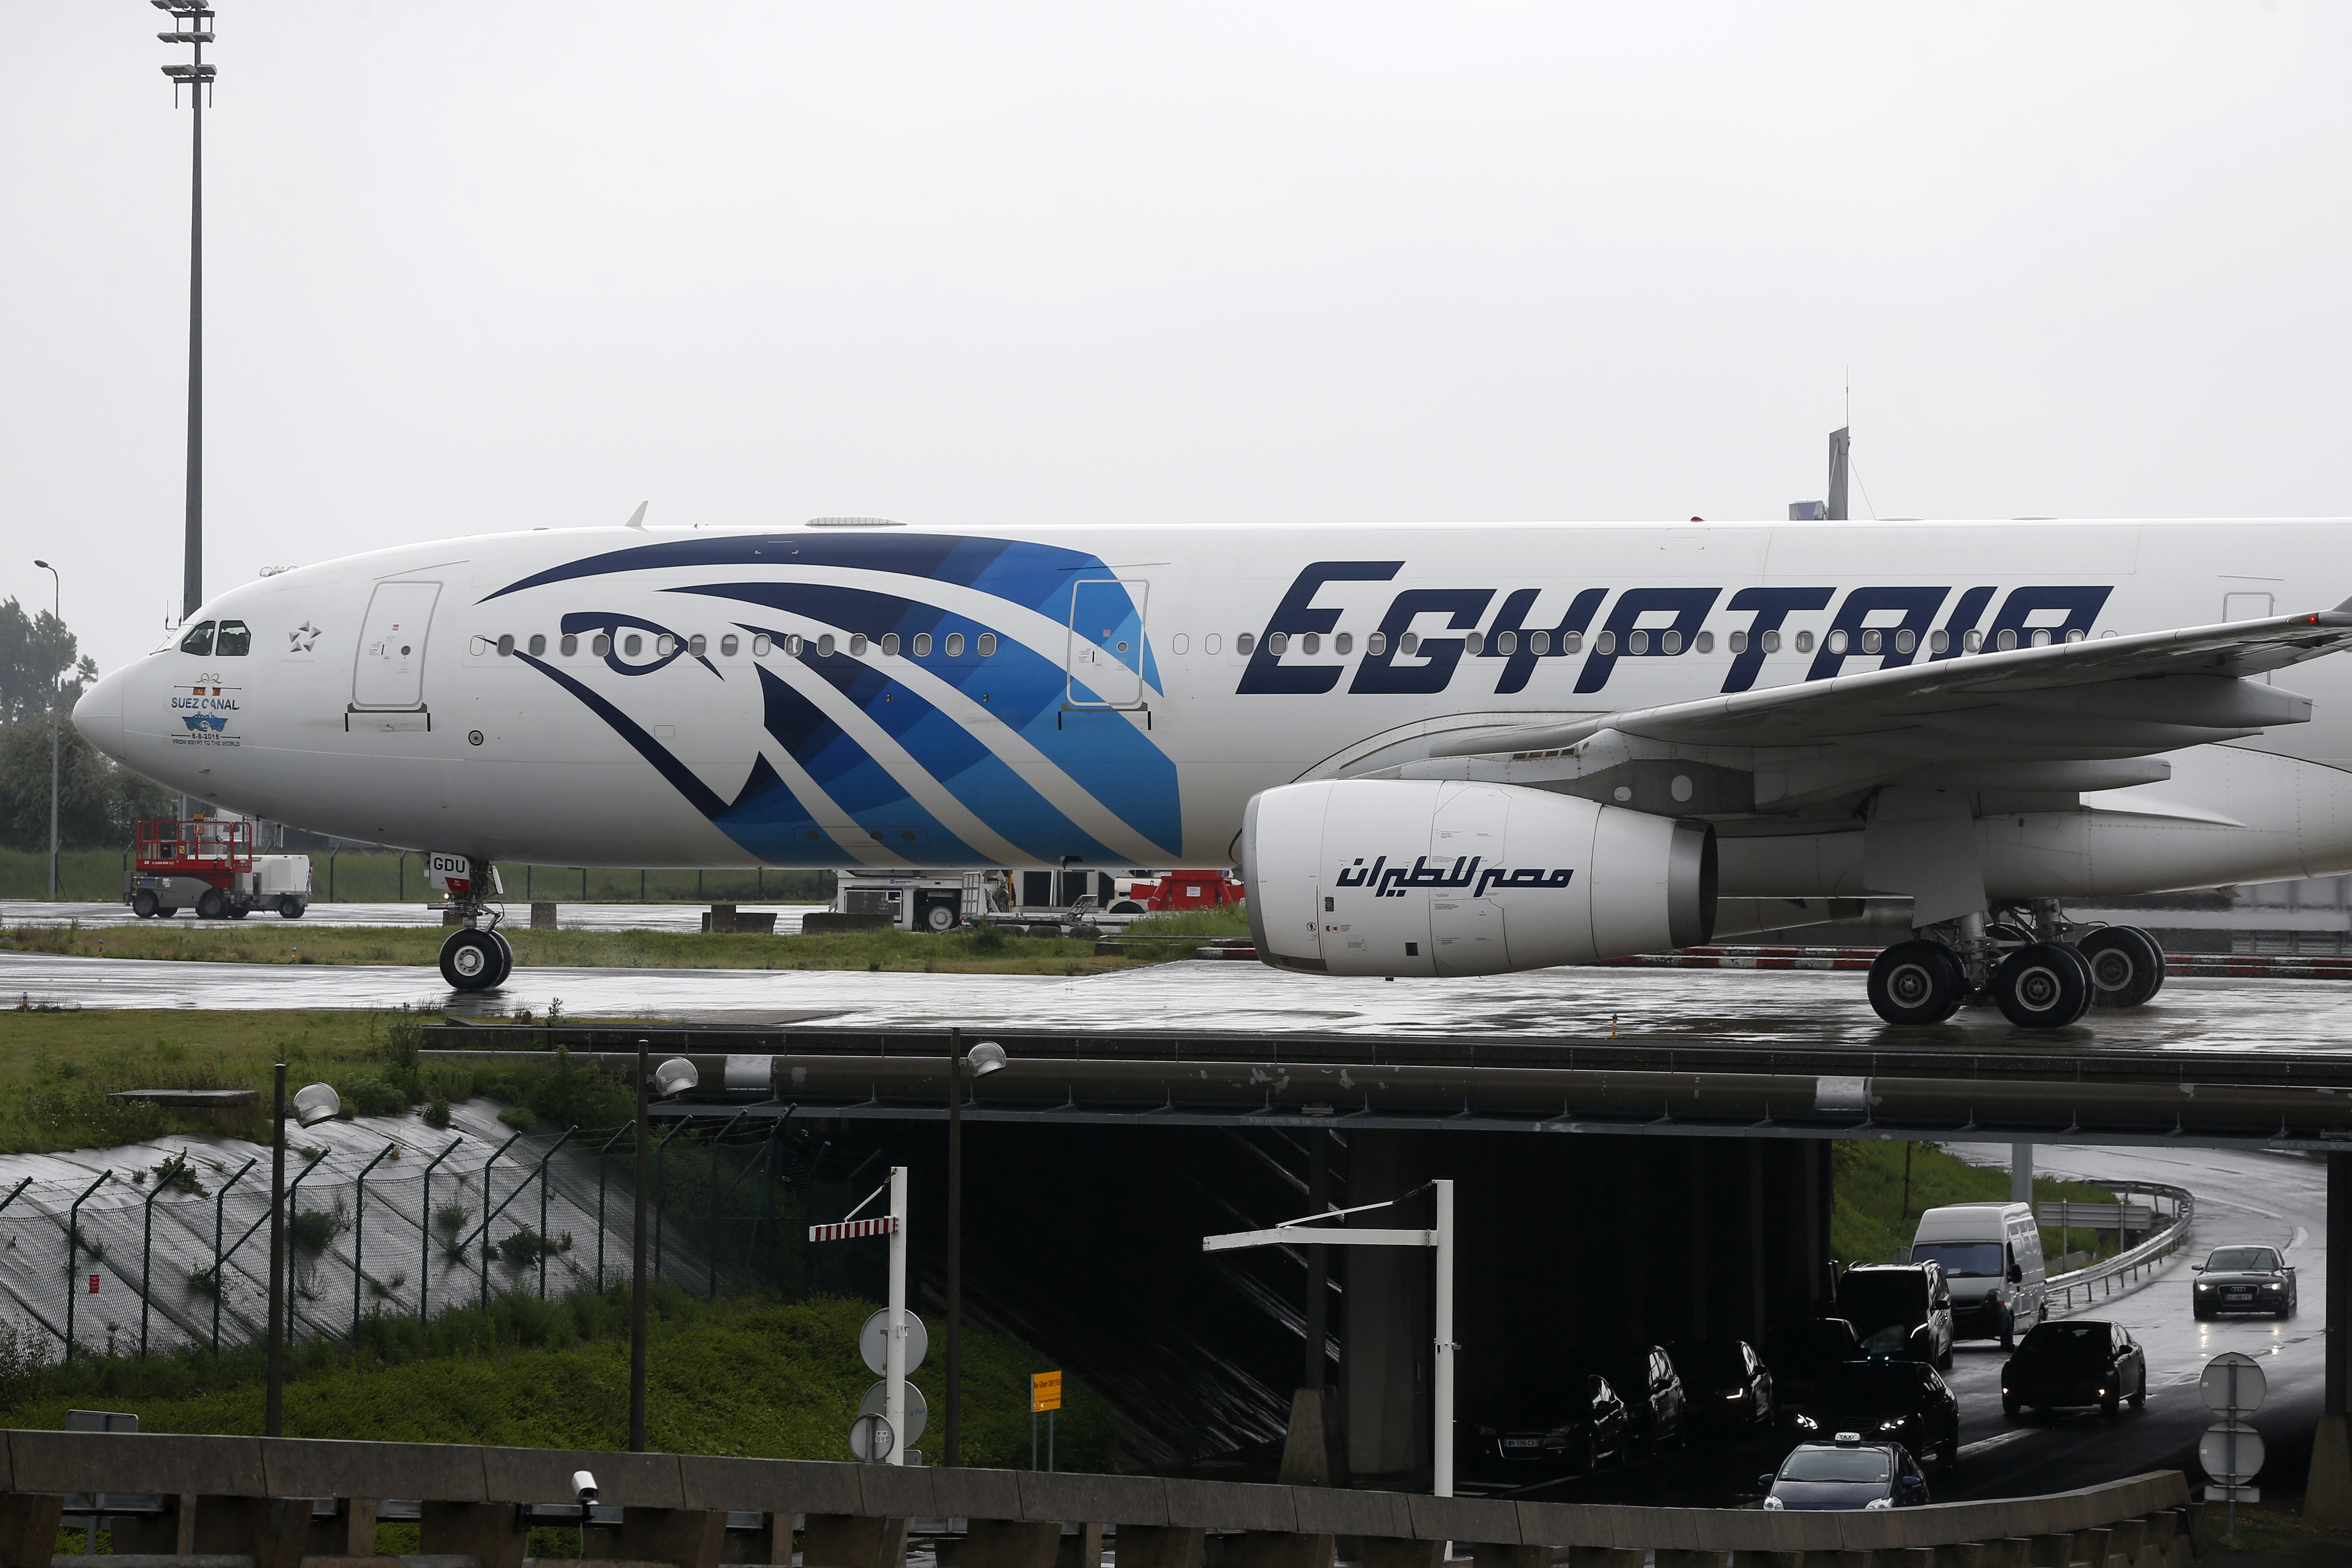 Megtalálták a májusban eltűnt Egyptair gép második feketedobozát is